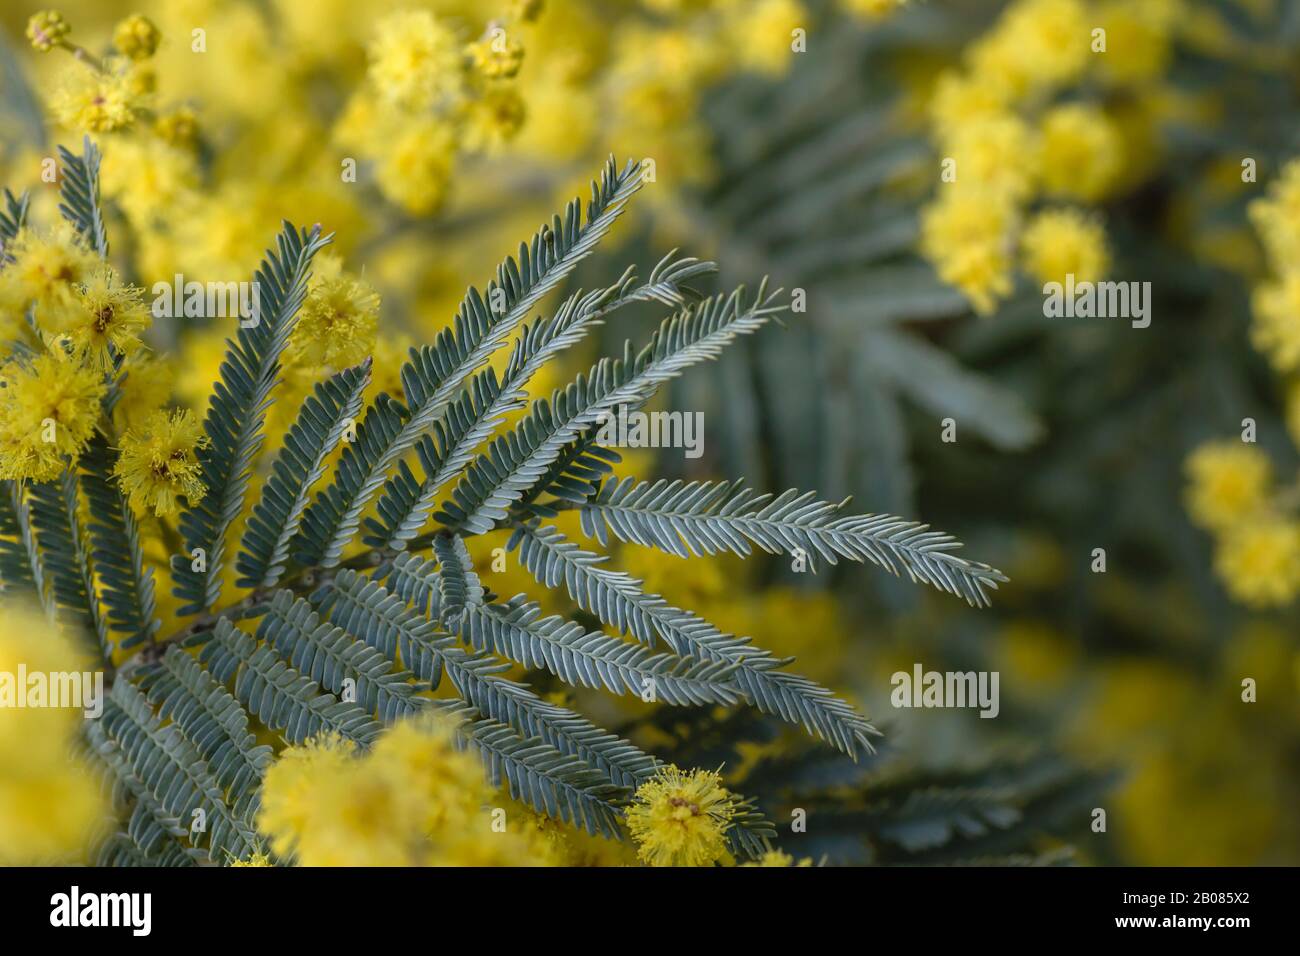 Détail des feuilles vertes argentées d'acacia dealnata en fleurs Banque D'Images